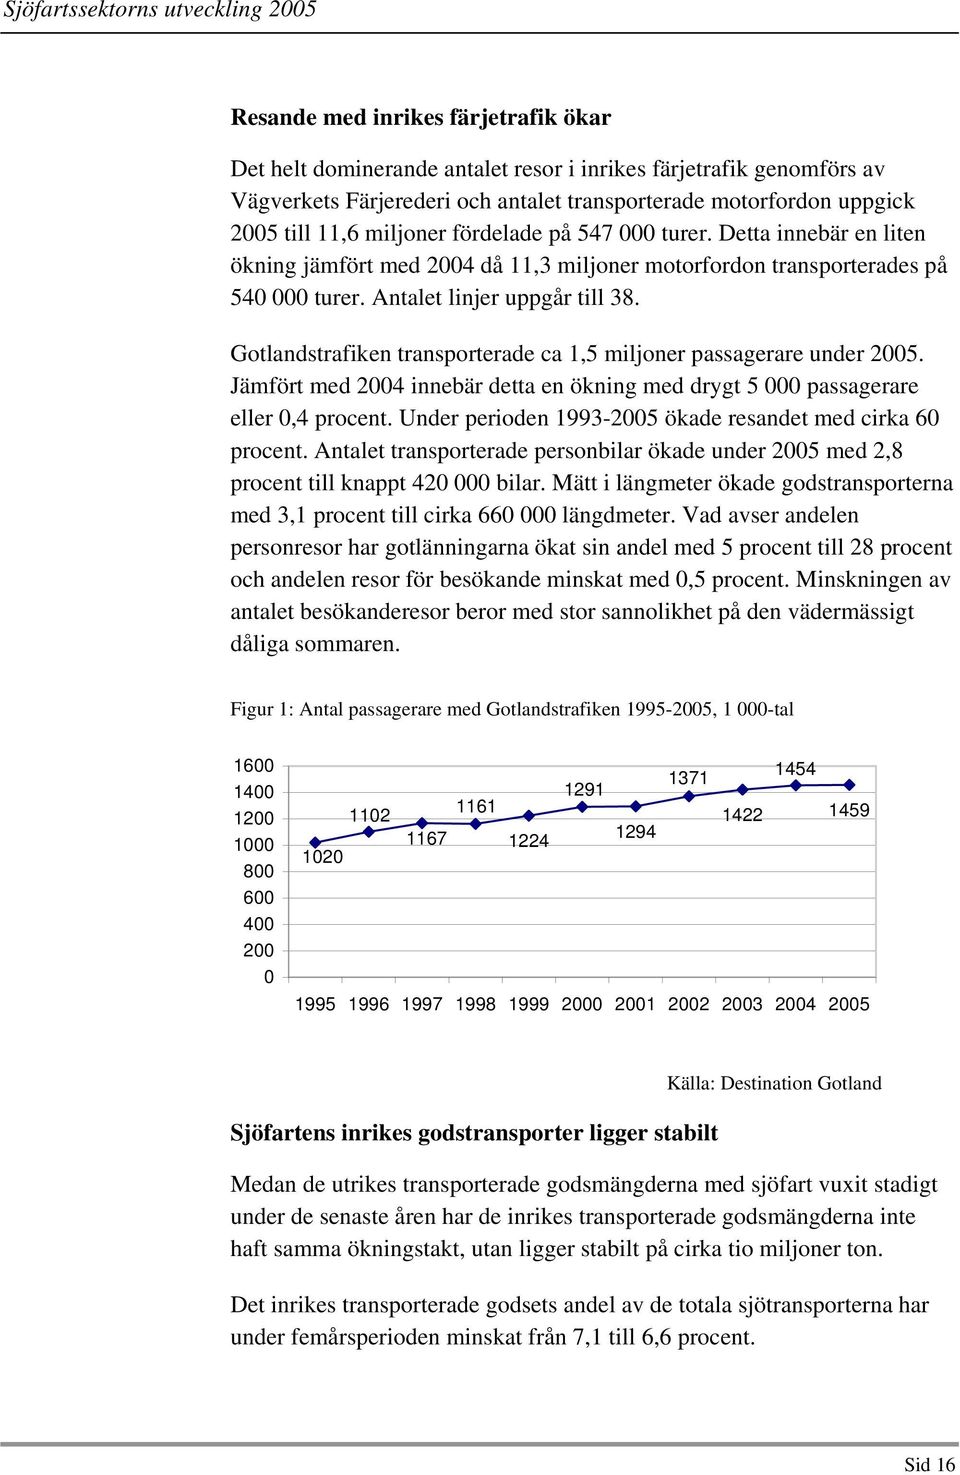 Gotlandstrafiken transporterade ca 1,5 miljoner passagerare under 2005. Jämfört med 2004 innebär detta en ökning med drygt 5 000 passagerare eller 0,4 procent.